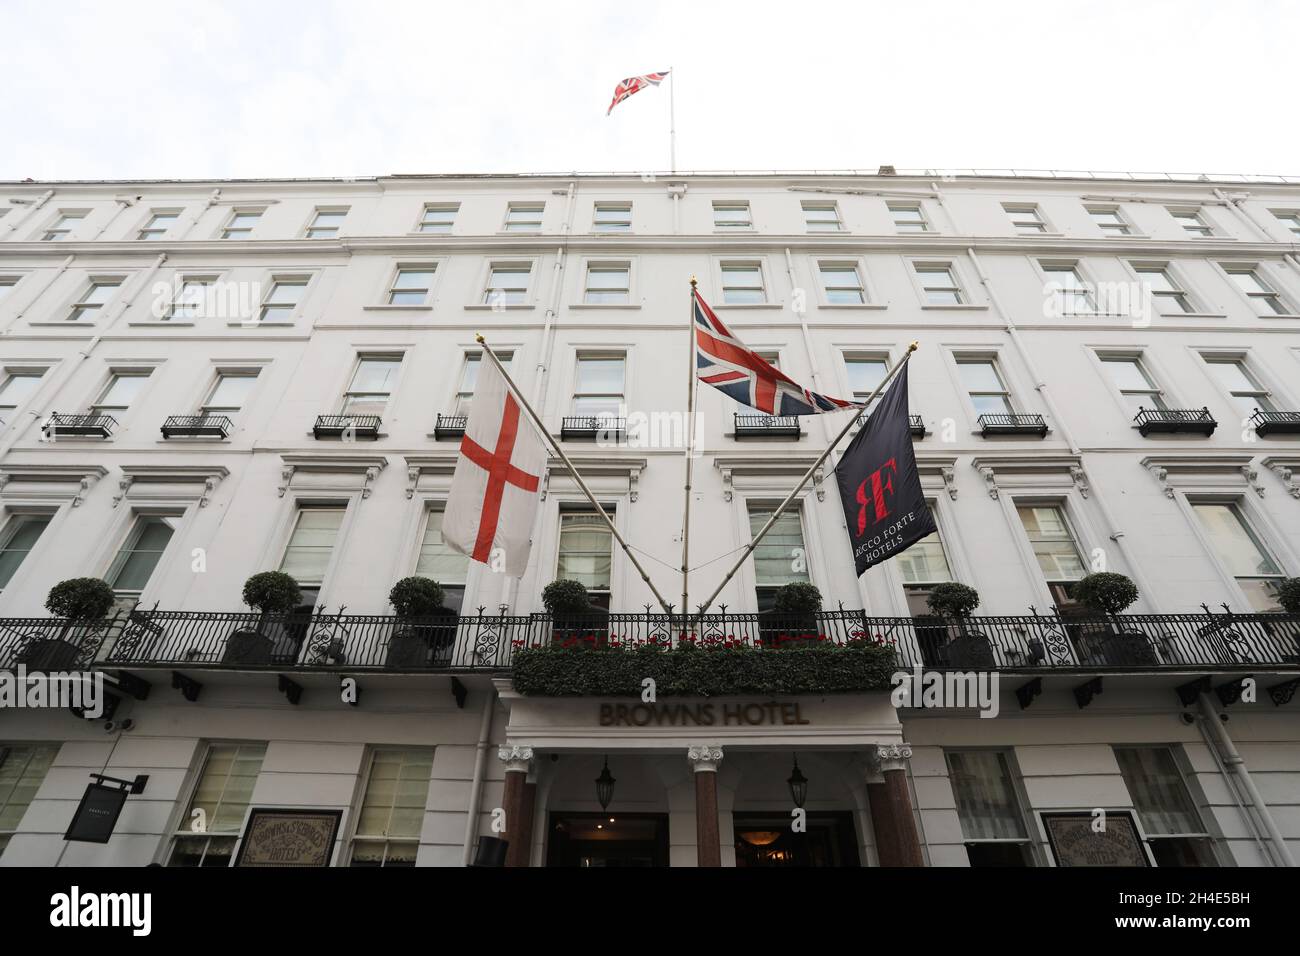 Una vista generale del Brown's Hotel a Mayfair, Londra. Immagine datata: Martedì 10 settembre 2019. Il credito fotografico deve essere: Isabel Infantes / EMPICS Entertainment. Foto Stock